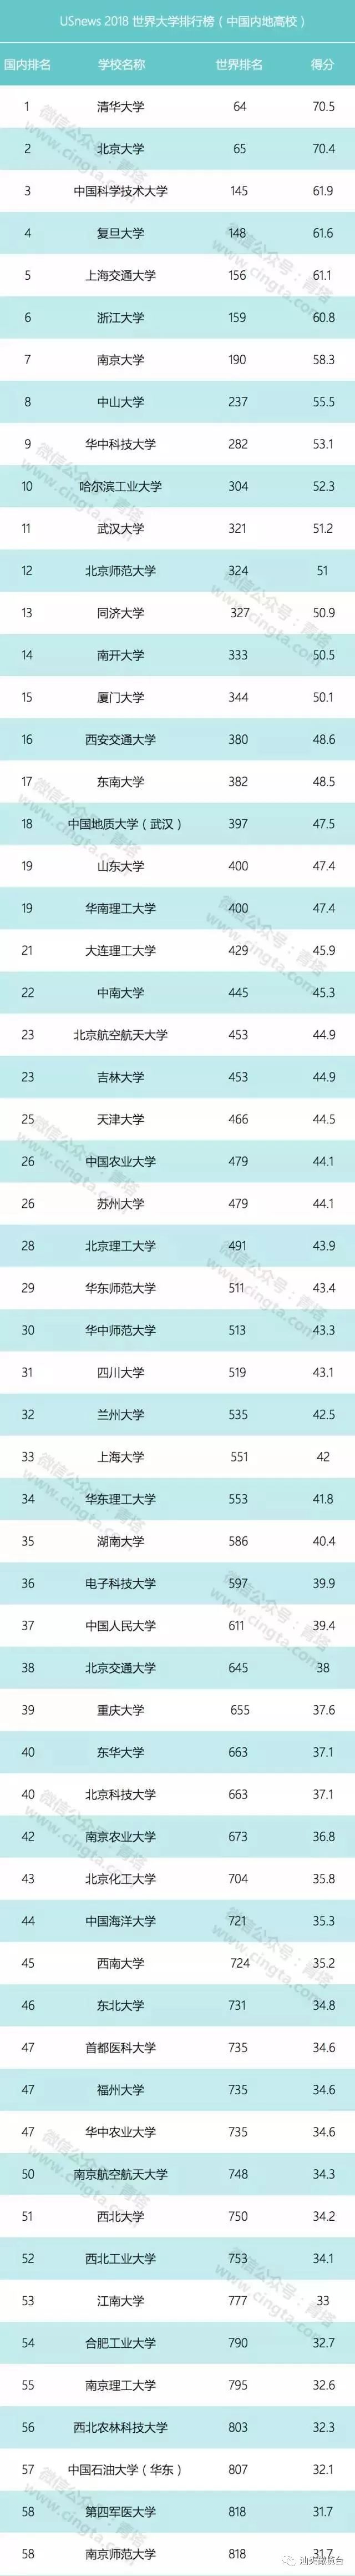 汕头大学首nba赌注平台次入榜USNews世界大学排名 在中国内地高校中列94位